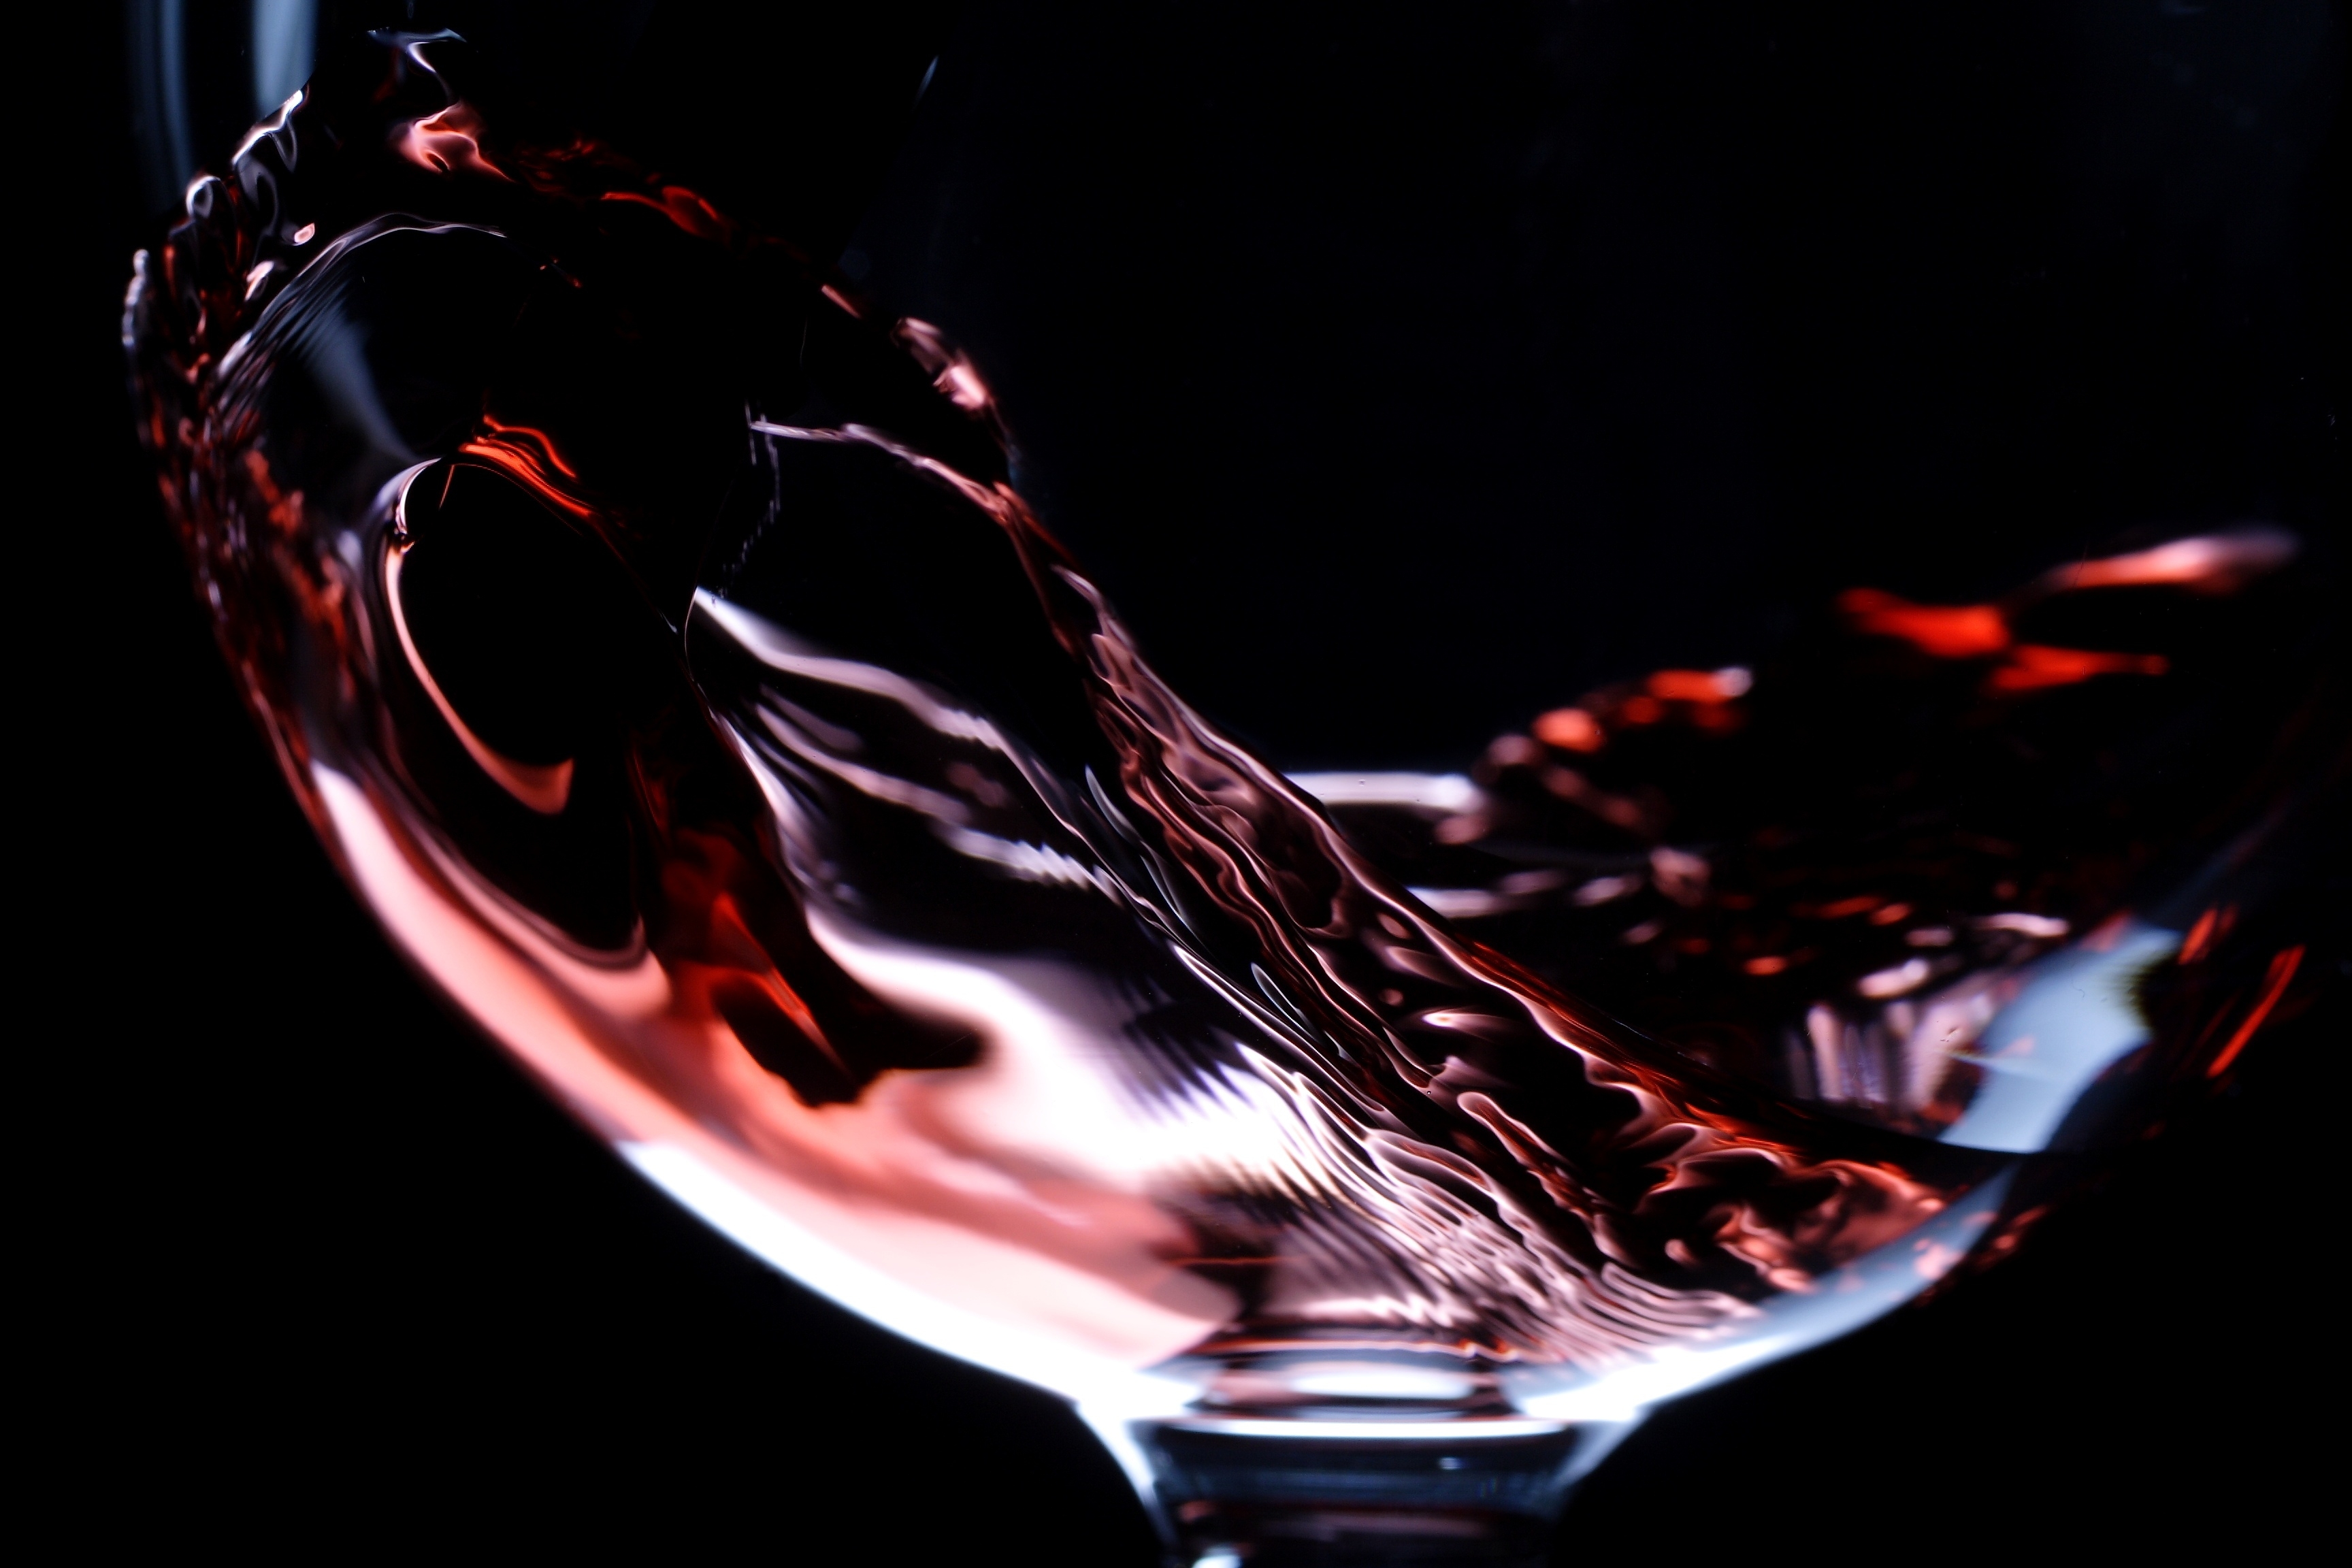 wine-red-glass-glass-liquid-macro